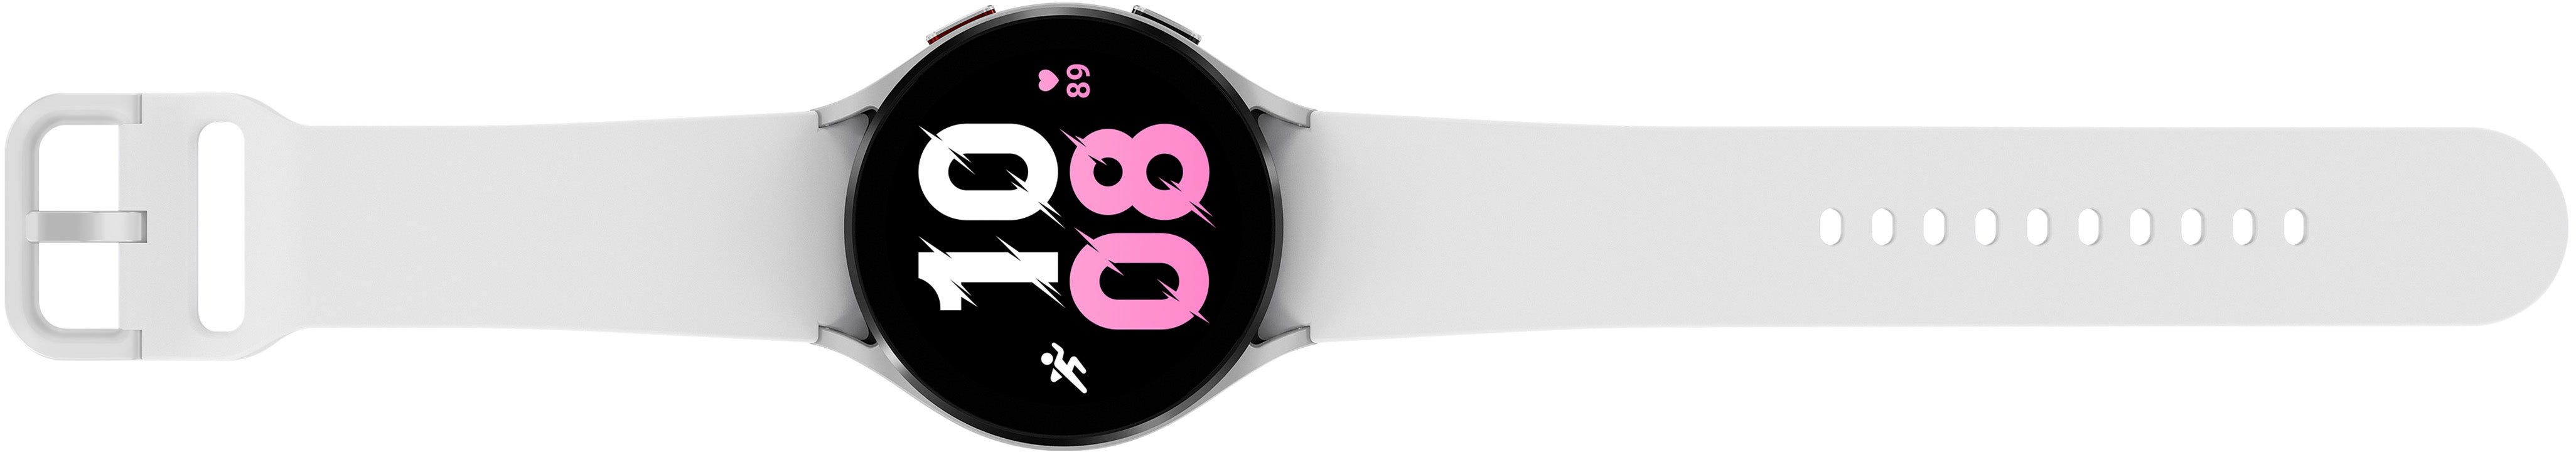 Samsung Galaxy Watch5 Aluminum Smartwatch 40mm BT Graphite SM-R900NZAAXAA -  Best Buy